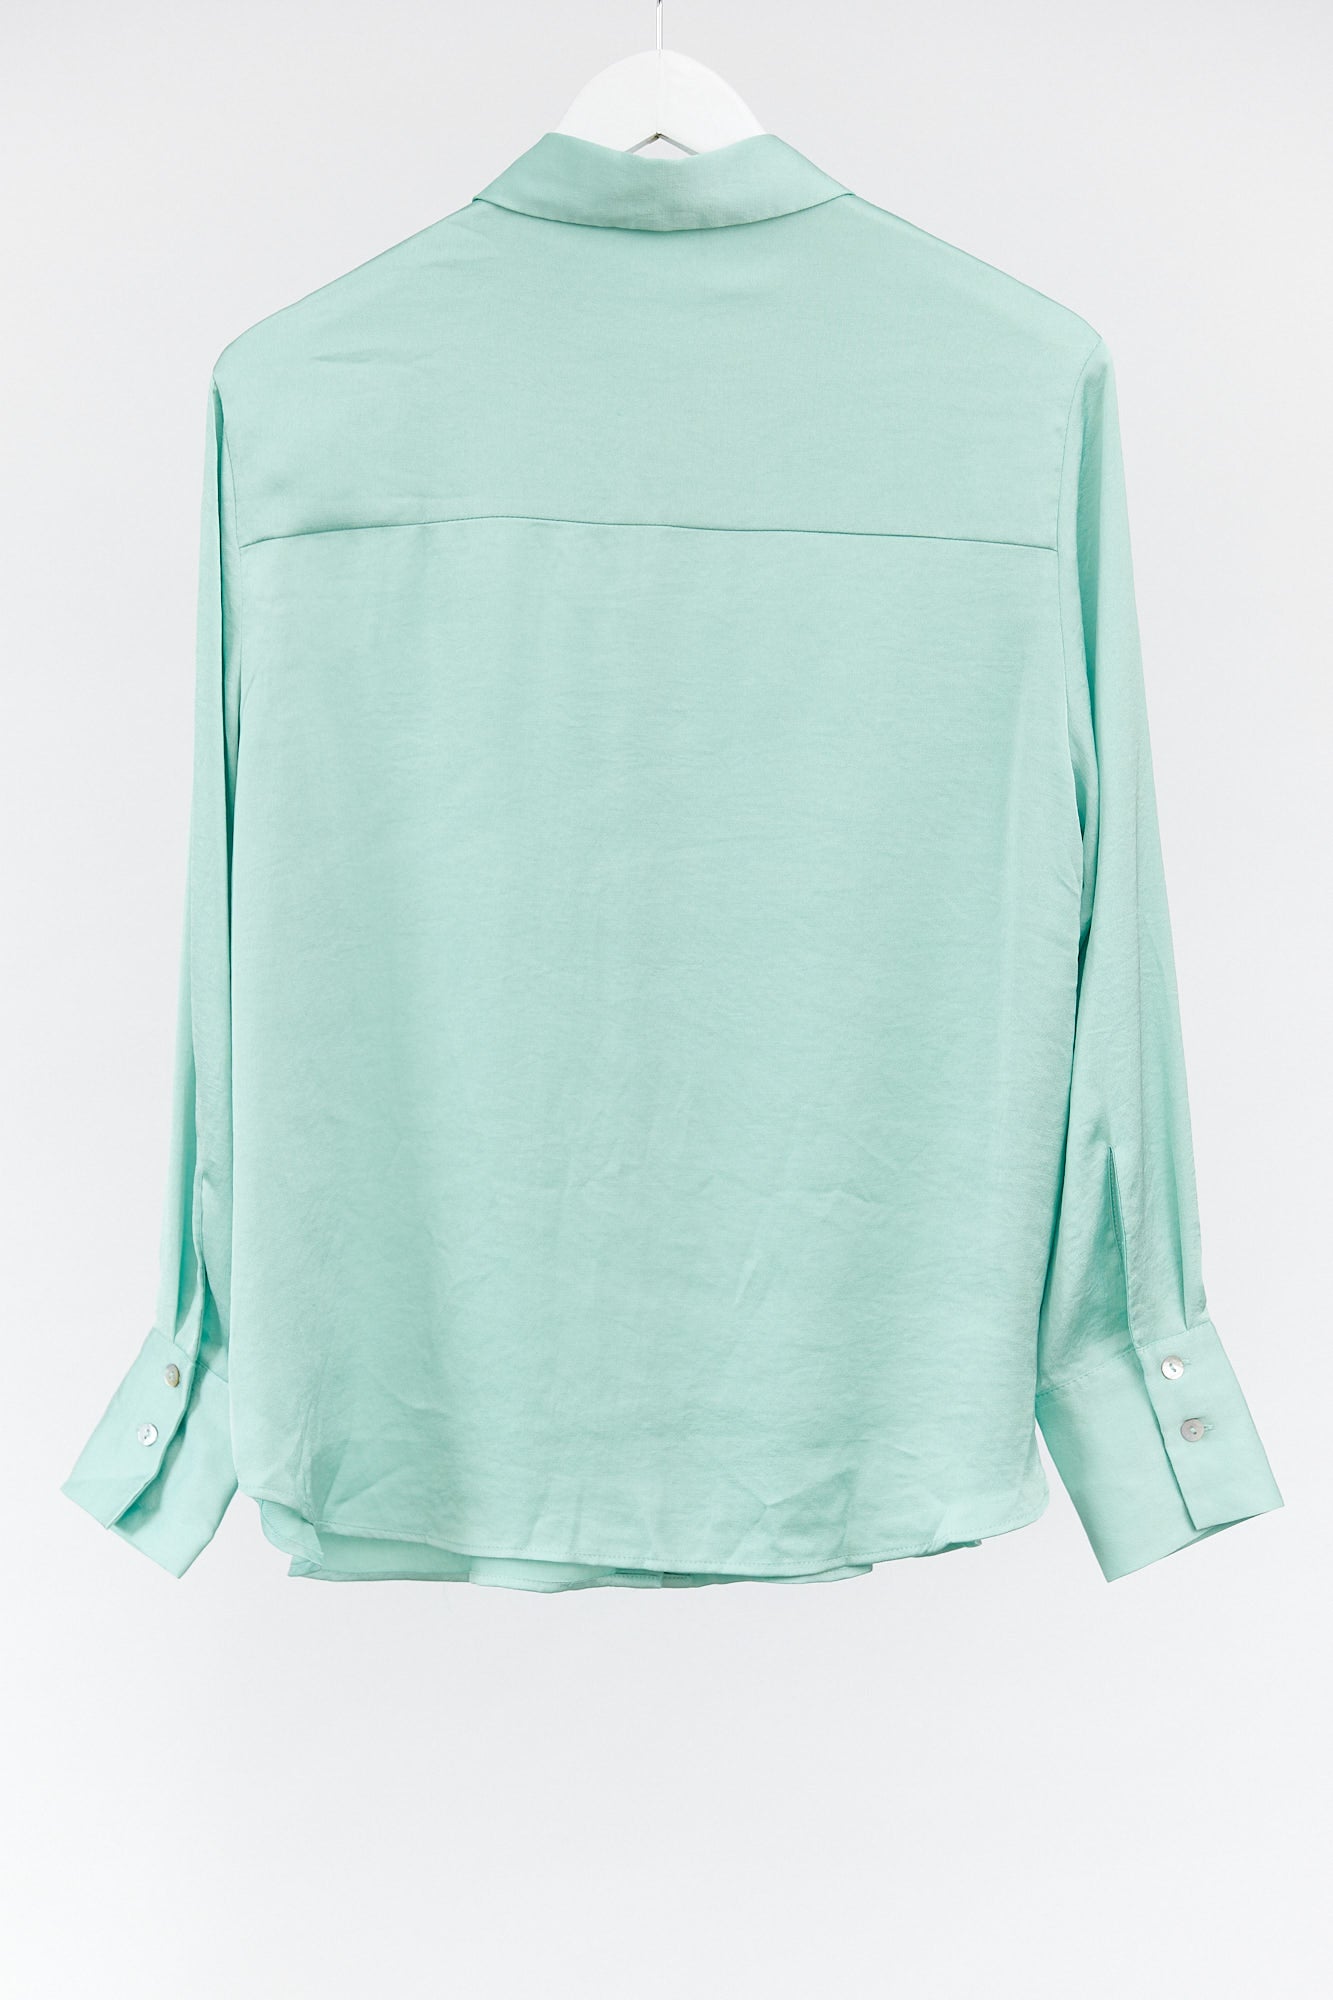 Womens Mango Turquoise satin shirt size medium